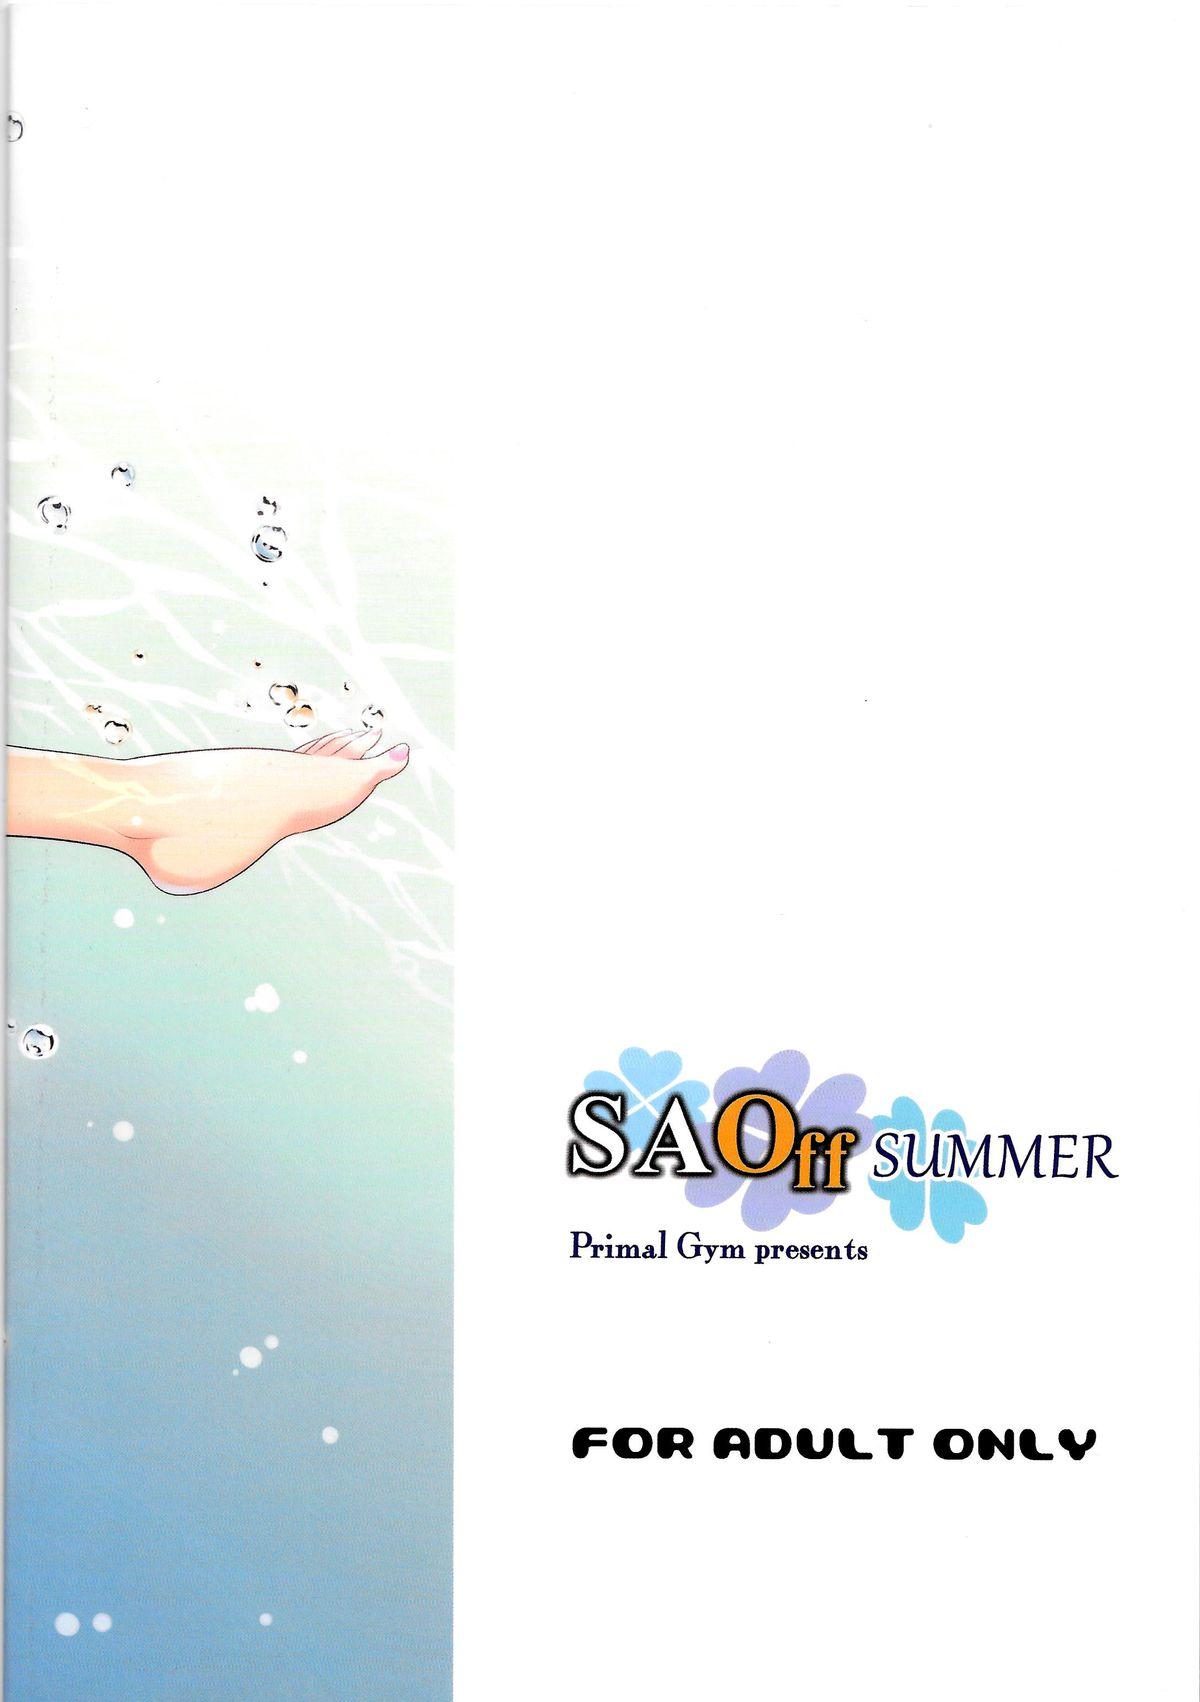 SAOff SUMMER 17